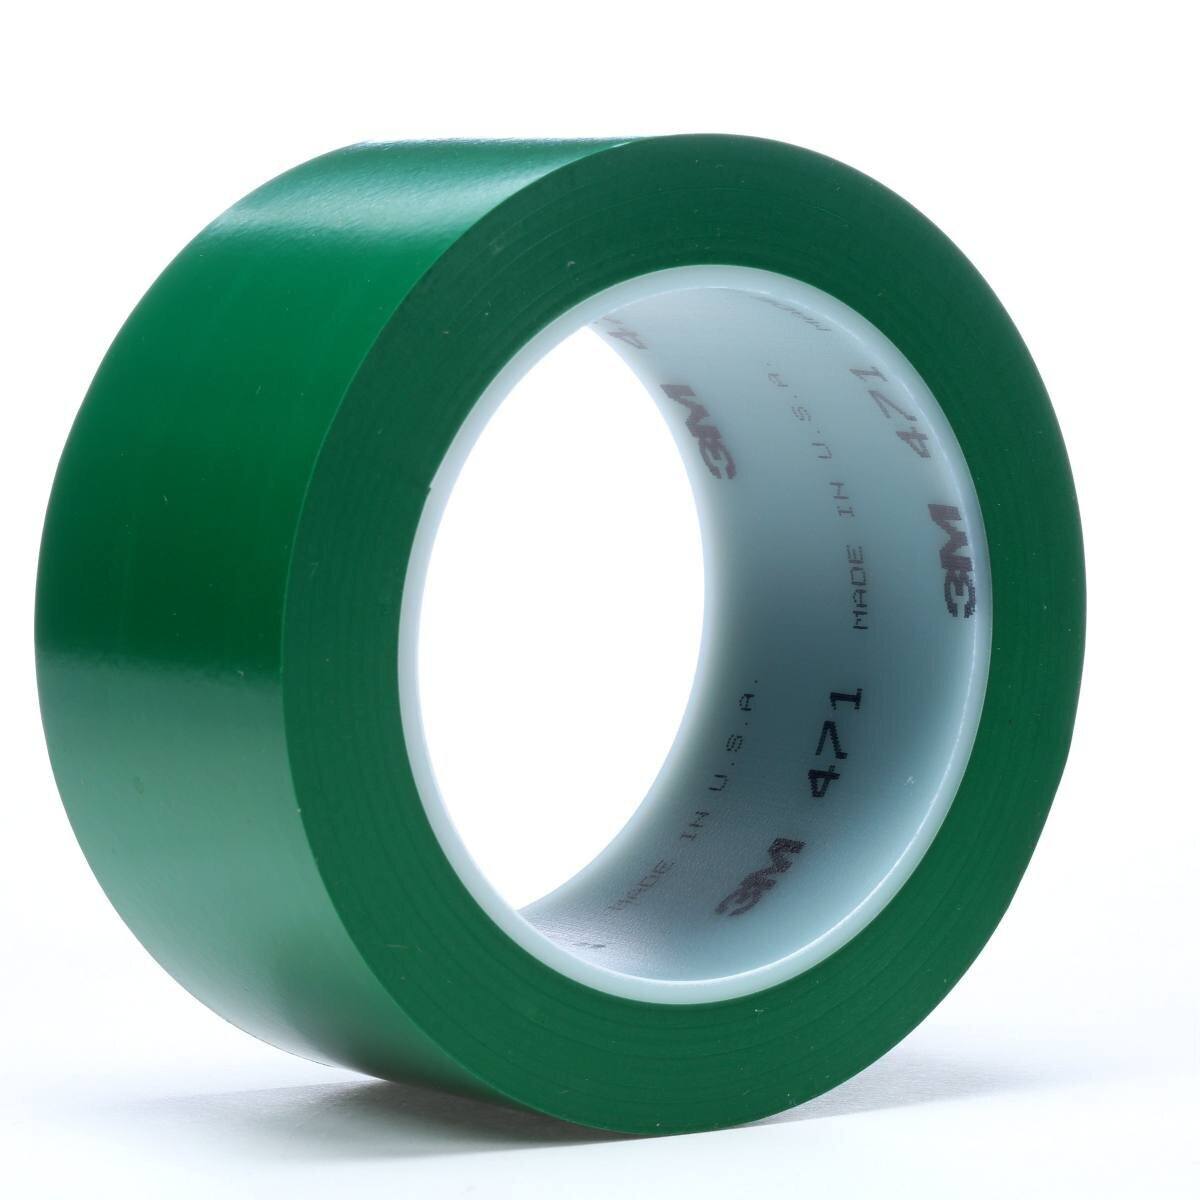 Nastro adesivo 3M in PVC morbido 471 F, verde, 50 mm x 33 m, 0,13 mm, confezionato singolarmente e in modo pratico